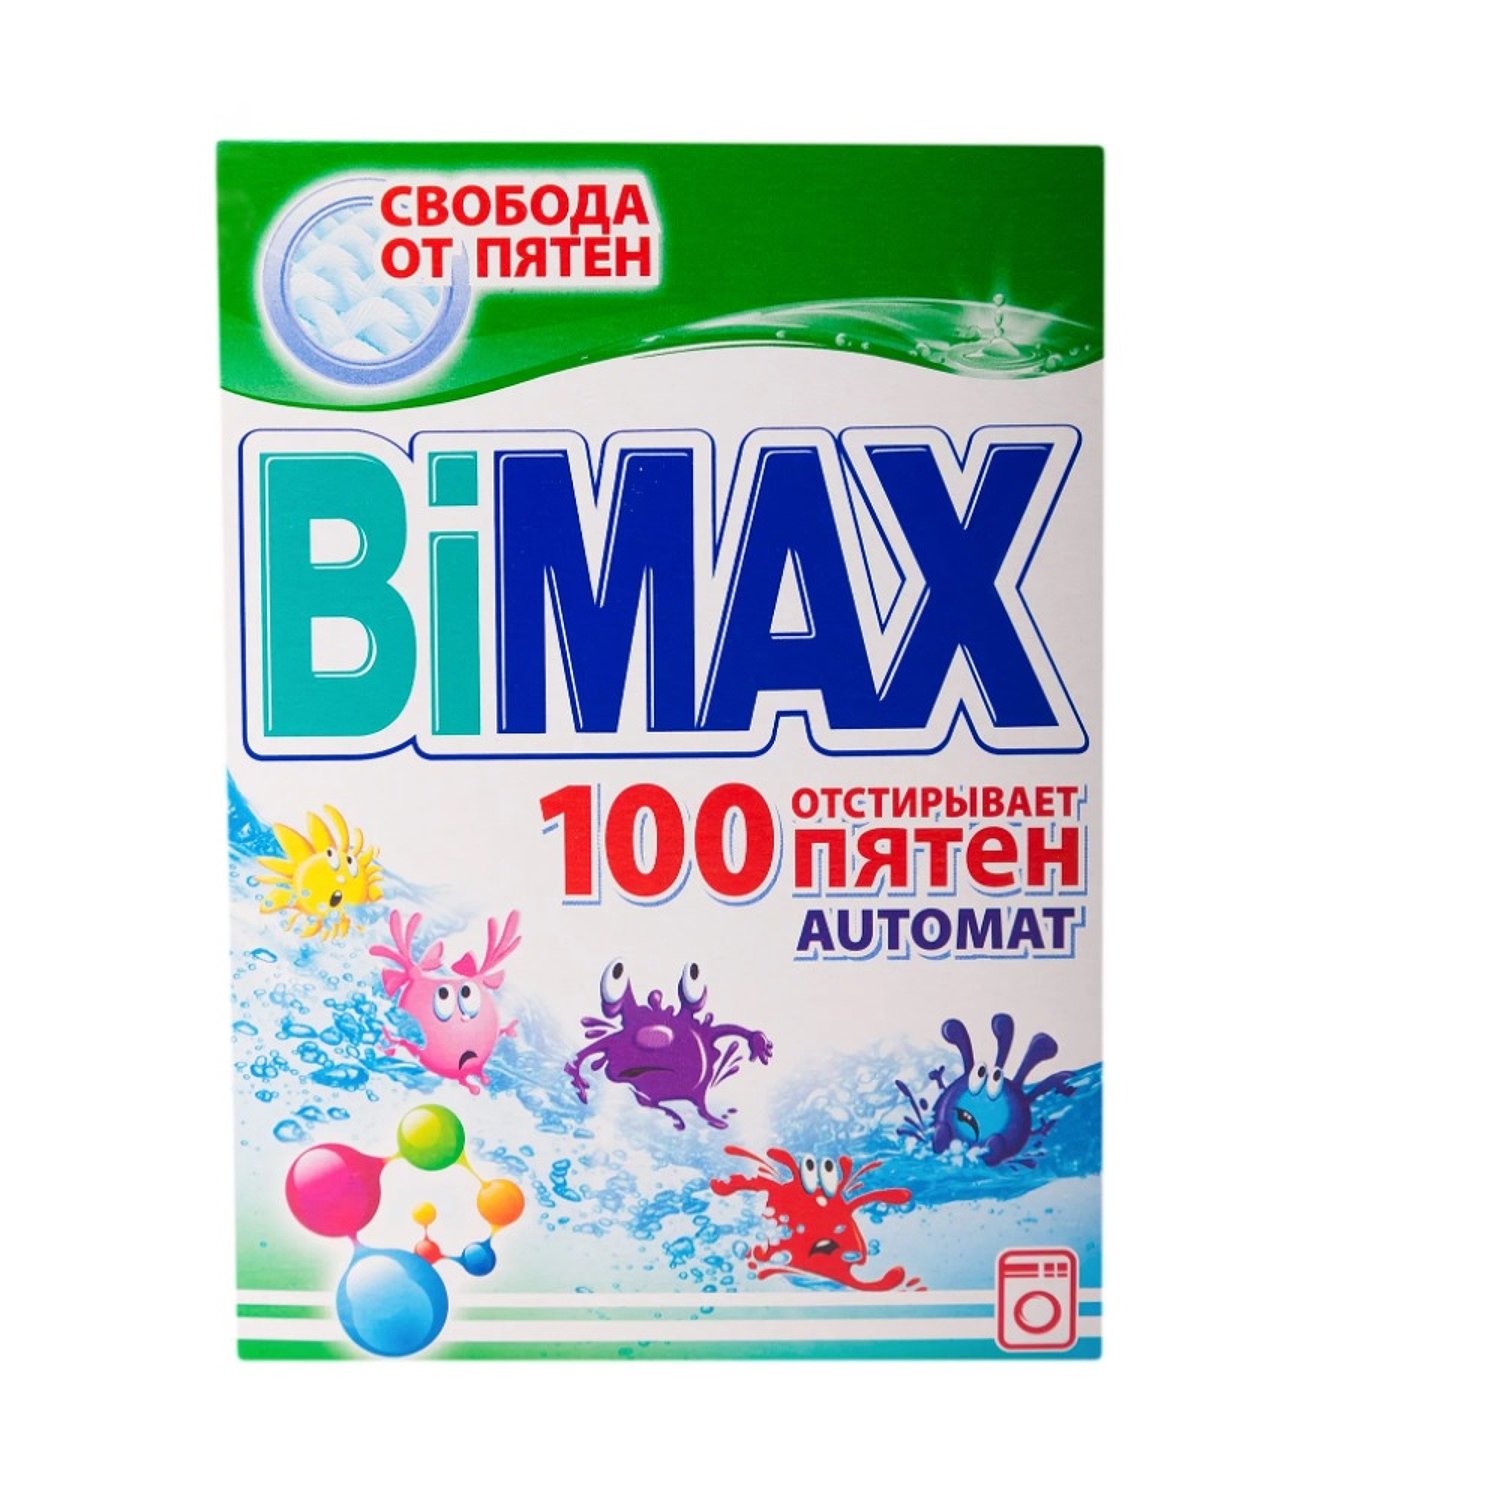 100 пятен. Порошок стиральный BIMAX 100 пятен автомат 400г. BIMAX 100 пятен. BIMAX automat 100 пятен. Порошок BIMAX, 100 пятен, Color automat, 400 г..